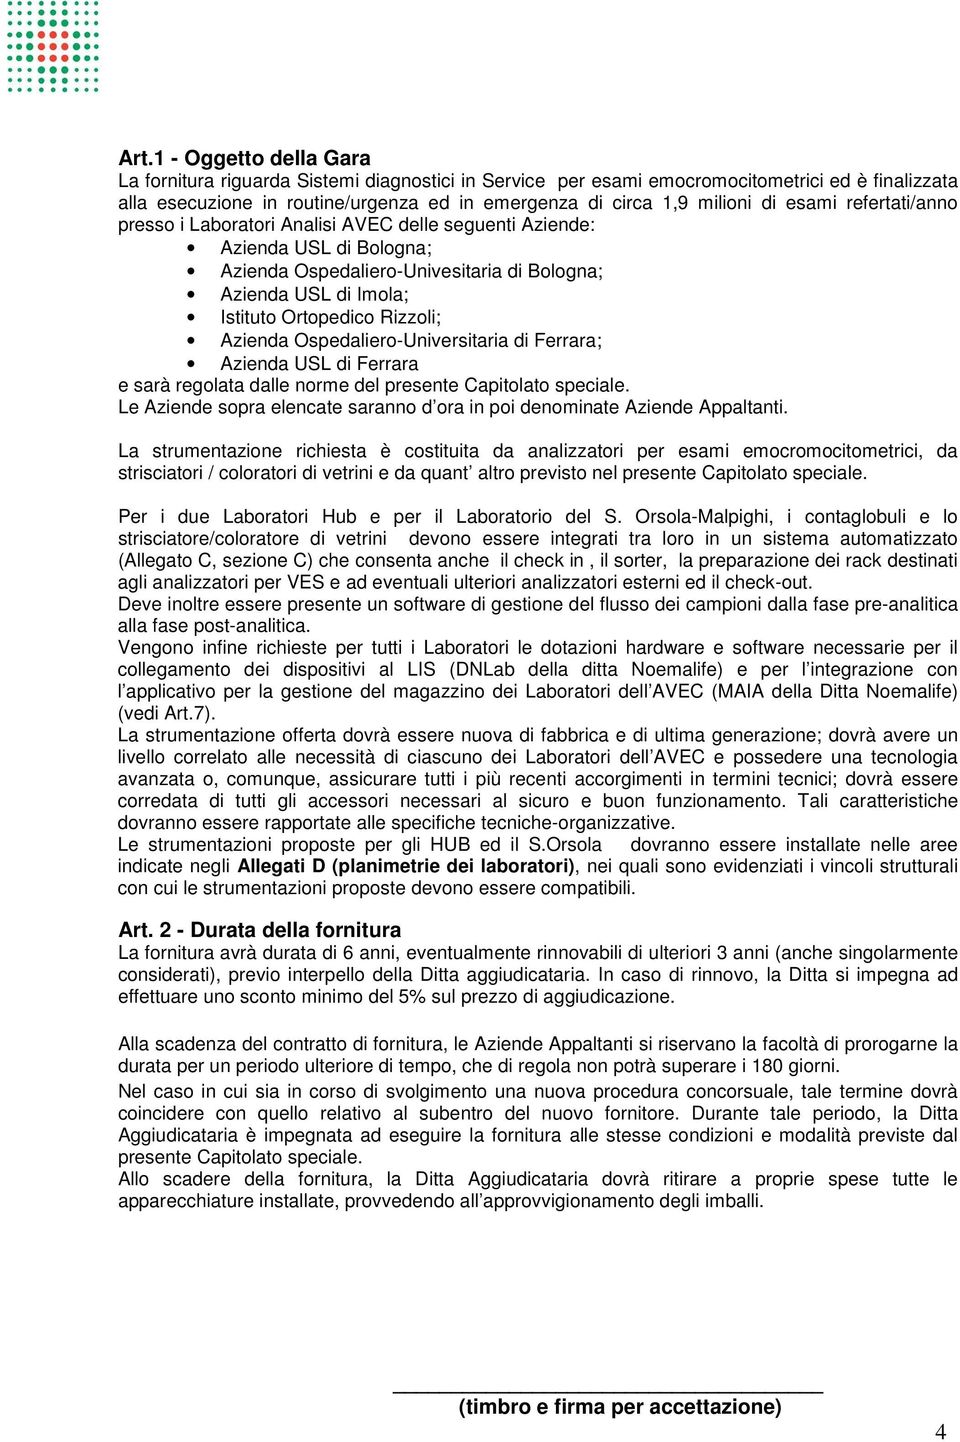 Rizzoli; Azienda Ospedaliero-Universitaria di Ferrara; Azienda USL di Ferrara e sarà regolata dalle norme del presente Capitolato speciale.